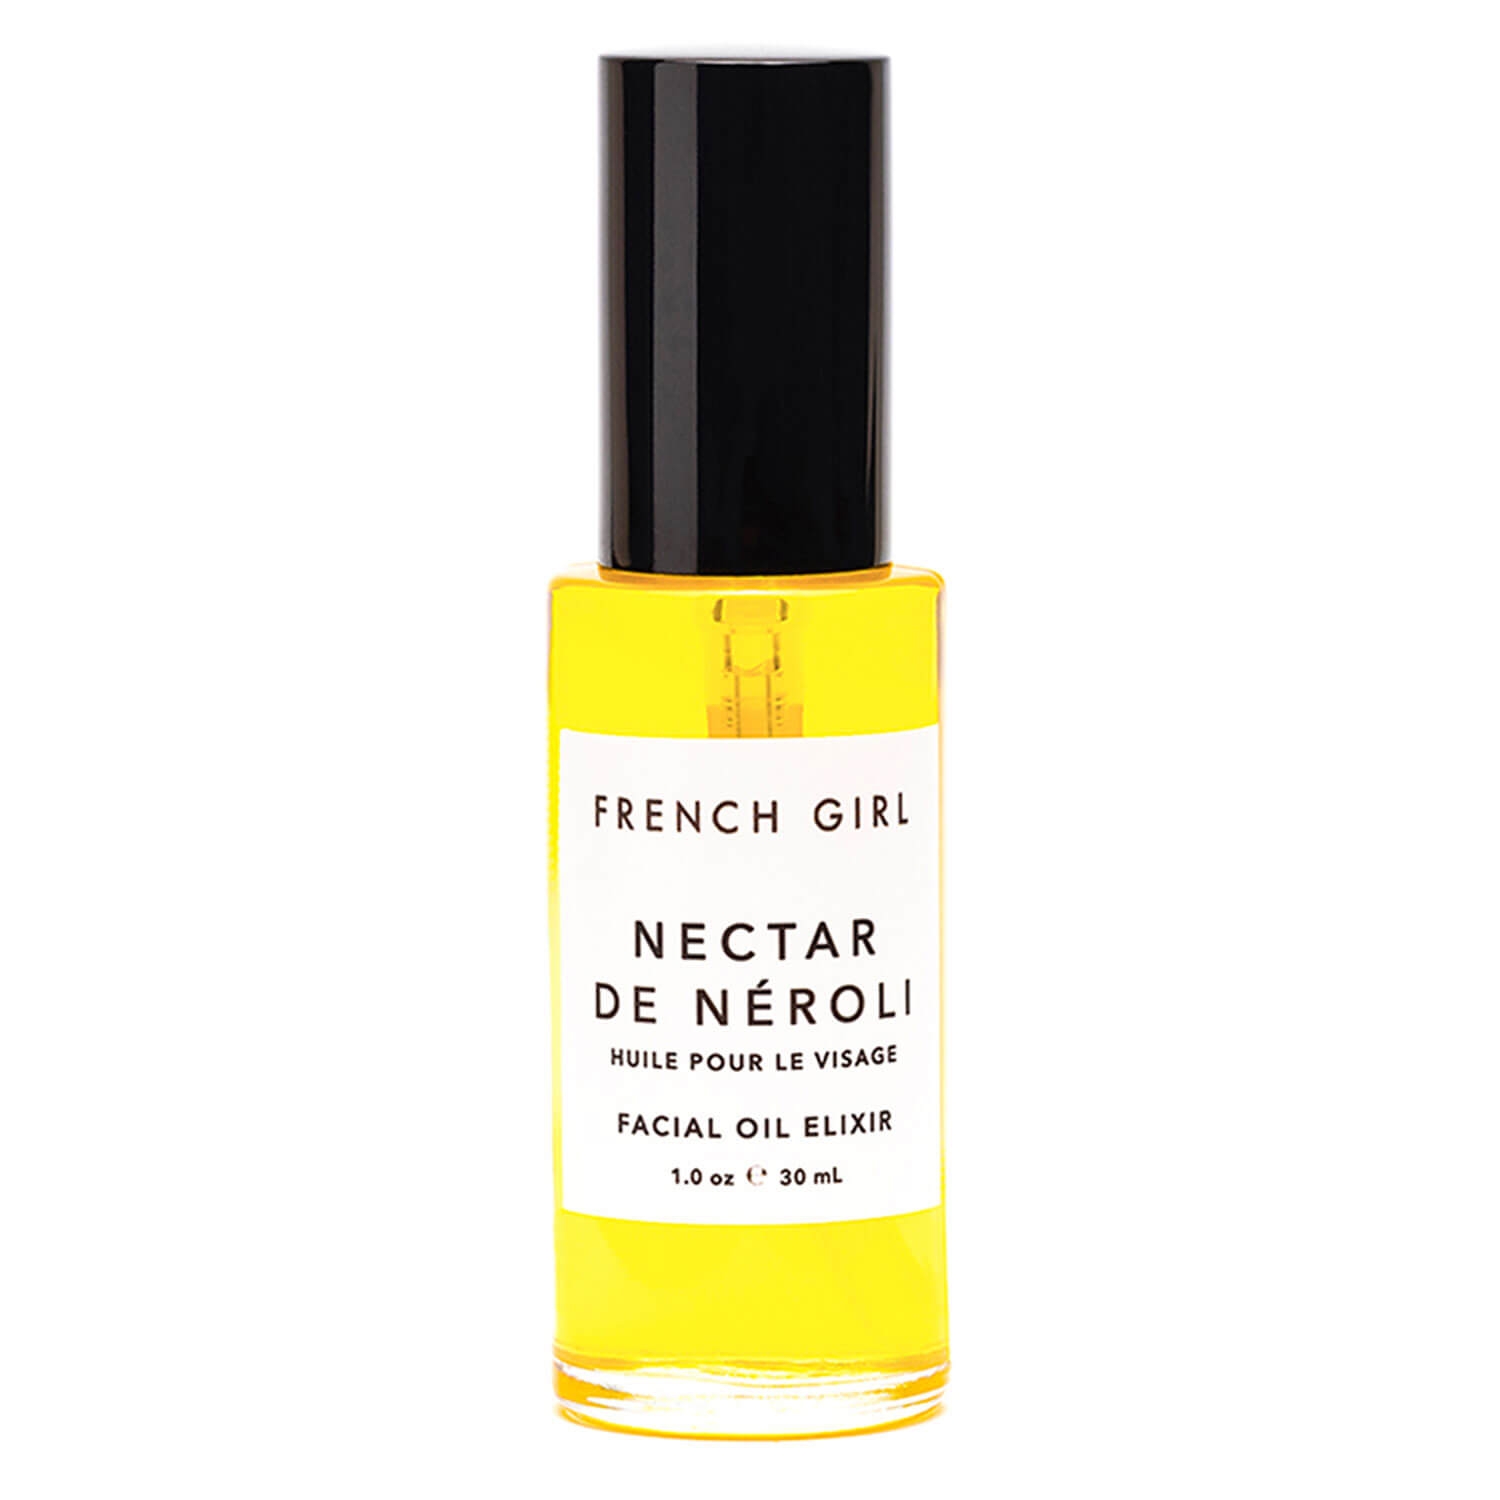 Produktbild von FRENCH GIRL - Nectar De Néroli Facial Oil Elixir